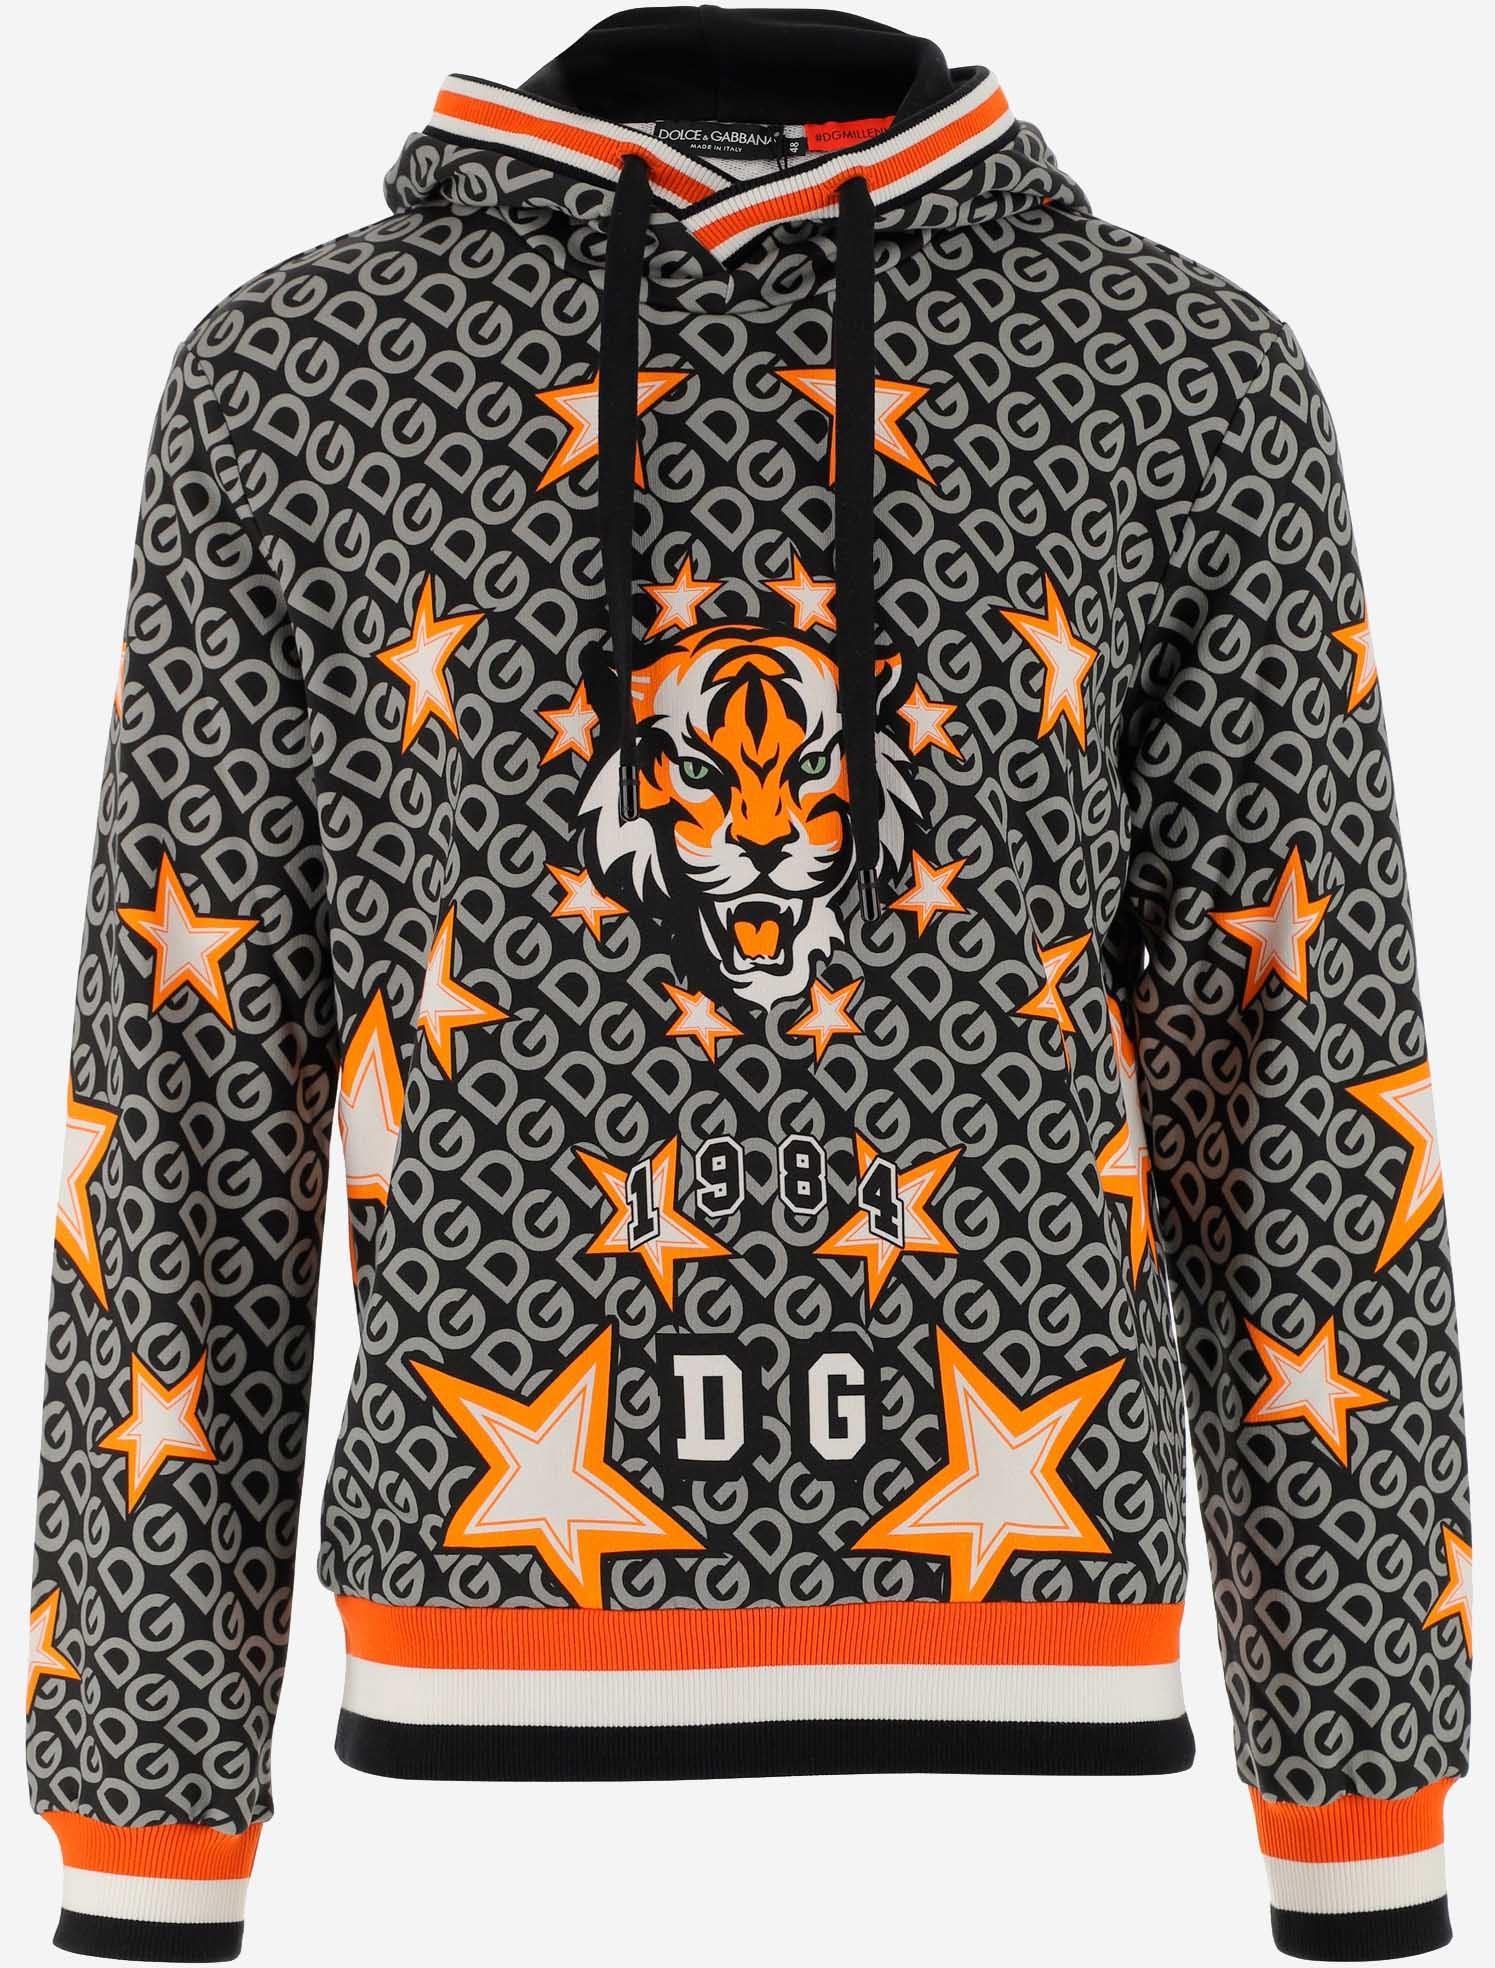 Dolce & Gabbana Men's Jersey Hoodie with DG Print